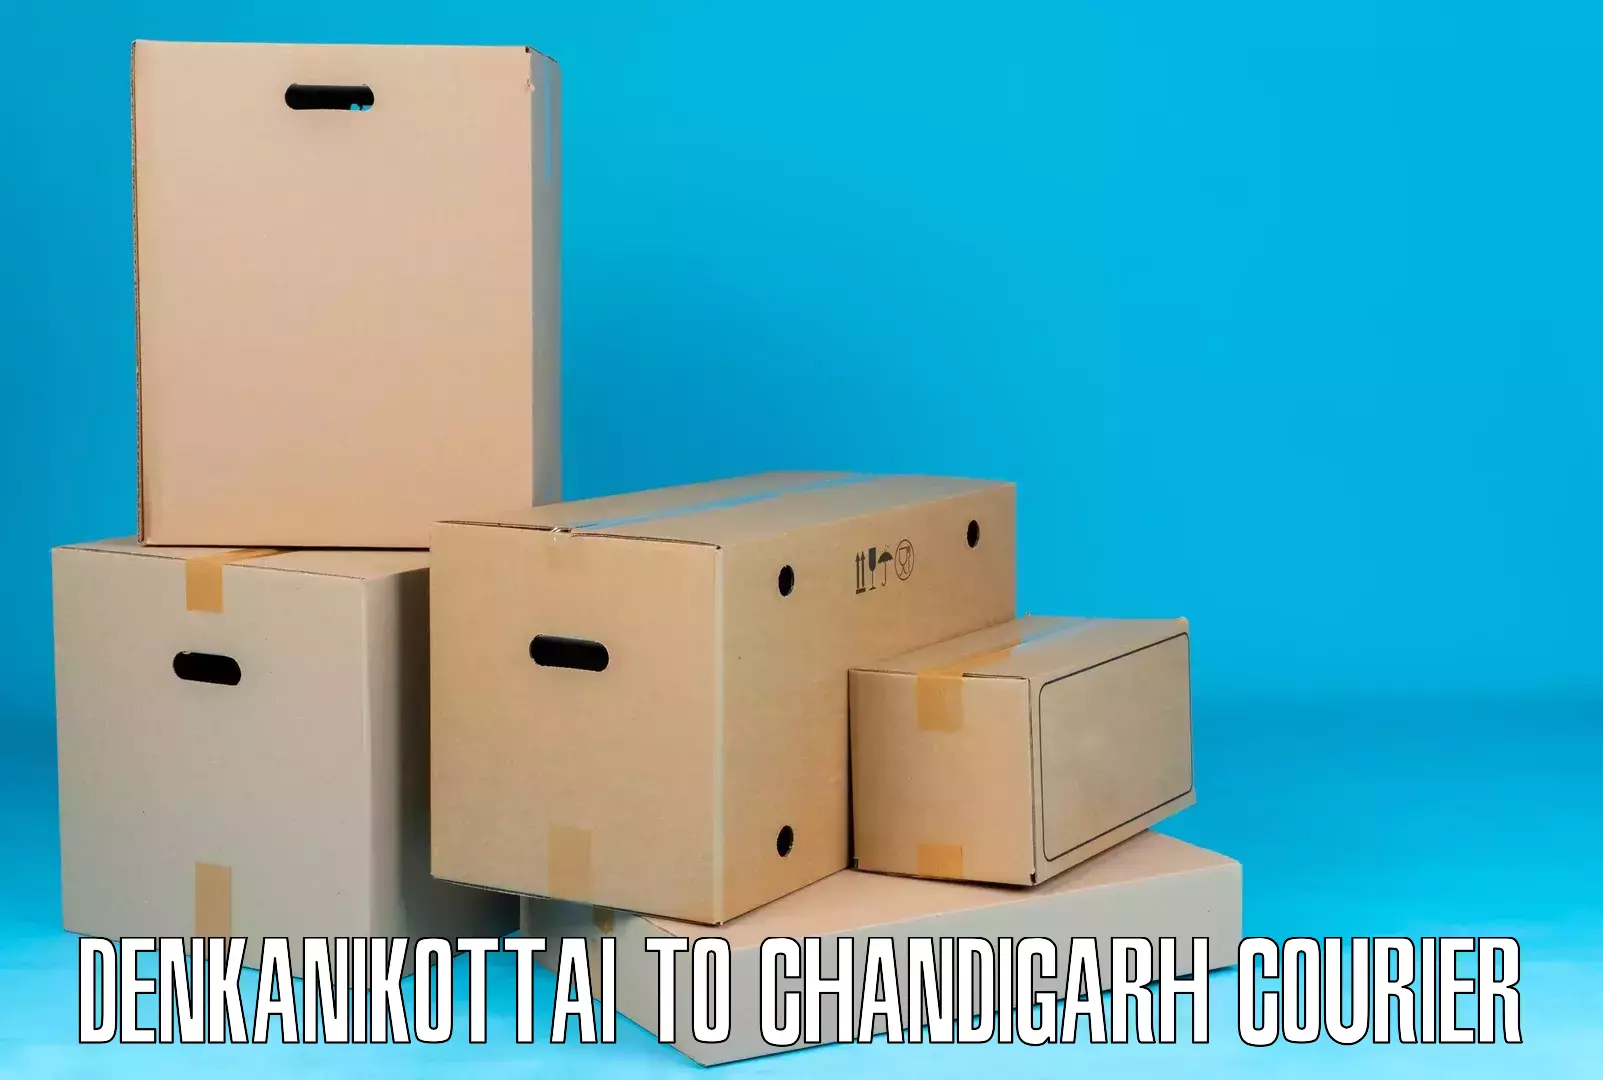 Efficient freight transportation Denkanikottai to Chandigarh